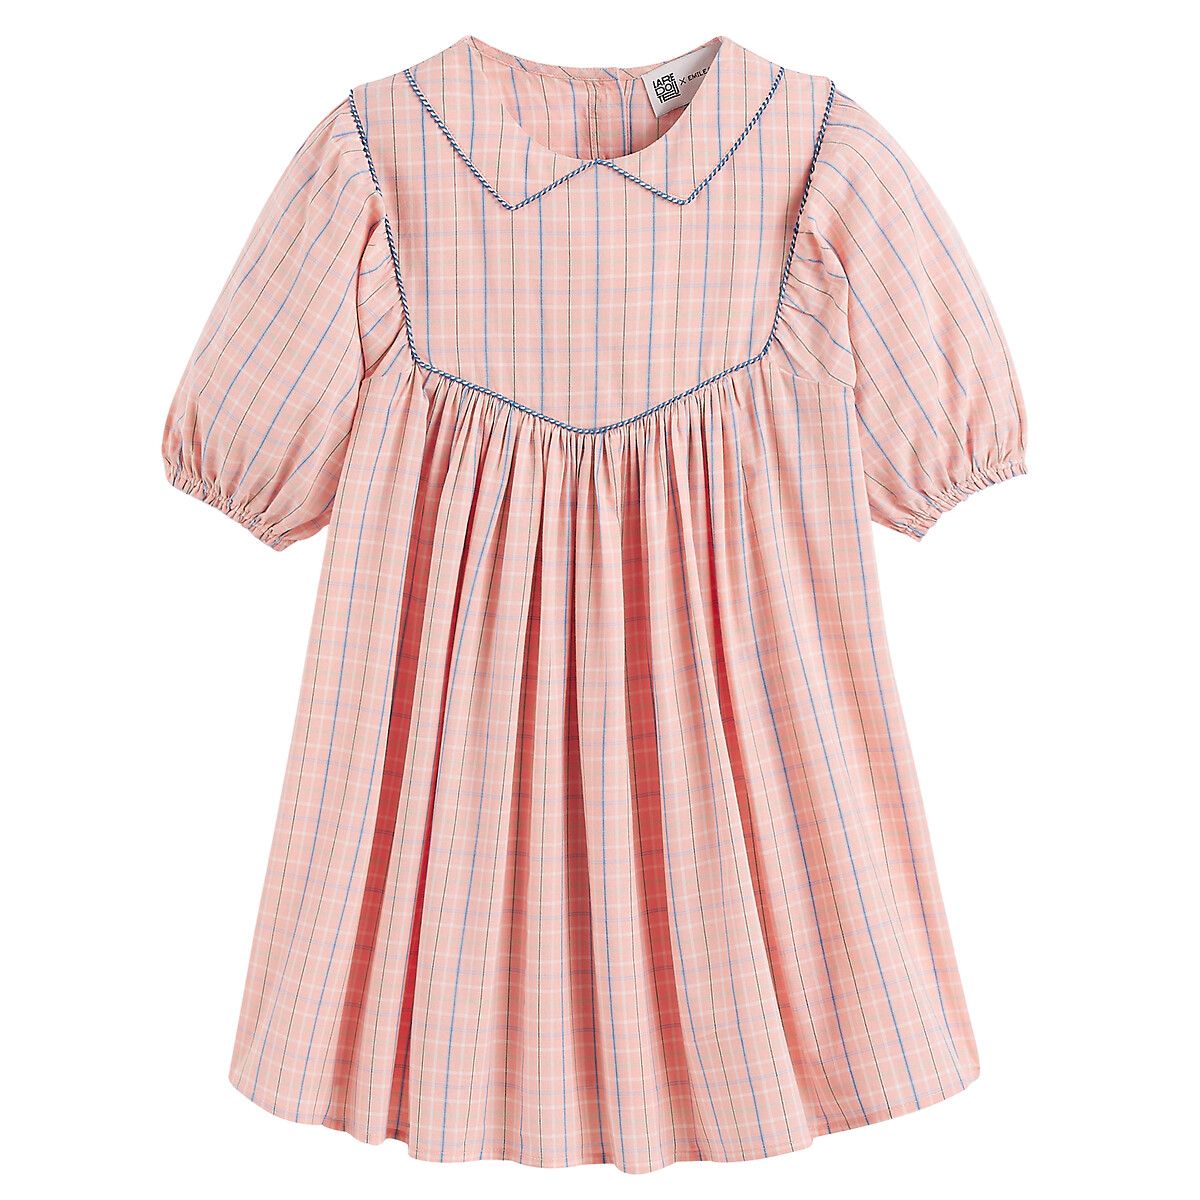 Платье в клетку с воротником-стойкой Claudine  4 года - 102 см розовый LaRedoute, размер 4 года - 102 см